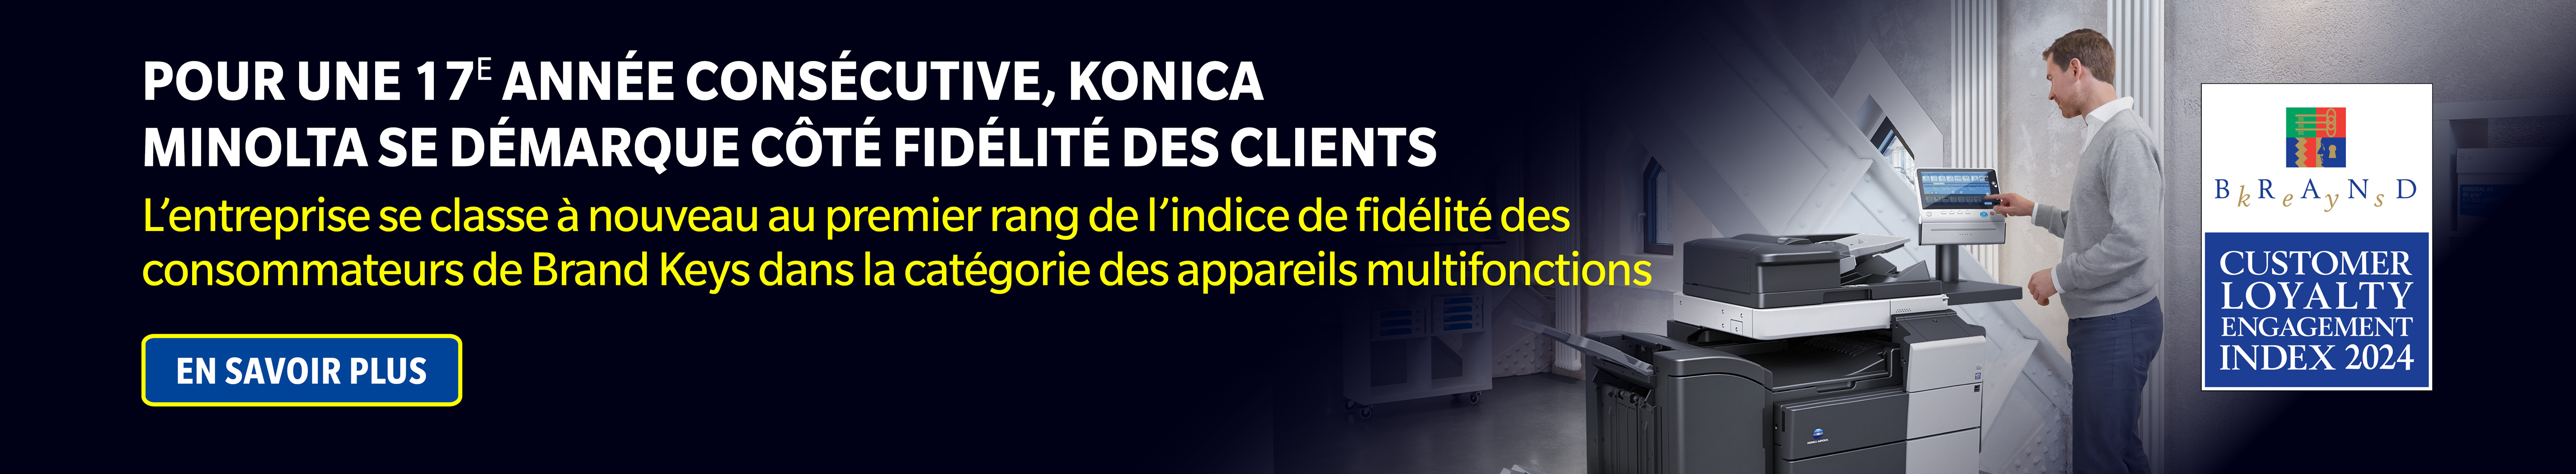 Pour une 17e année consécutive, Konica Minolta se démarque côté fidélité des clients